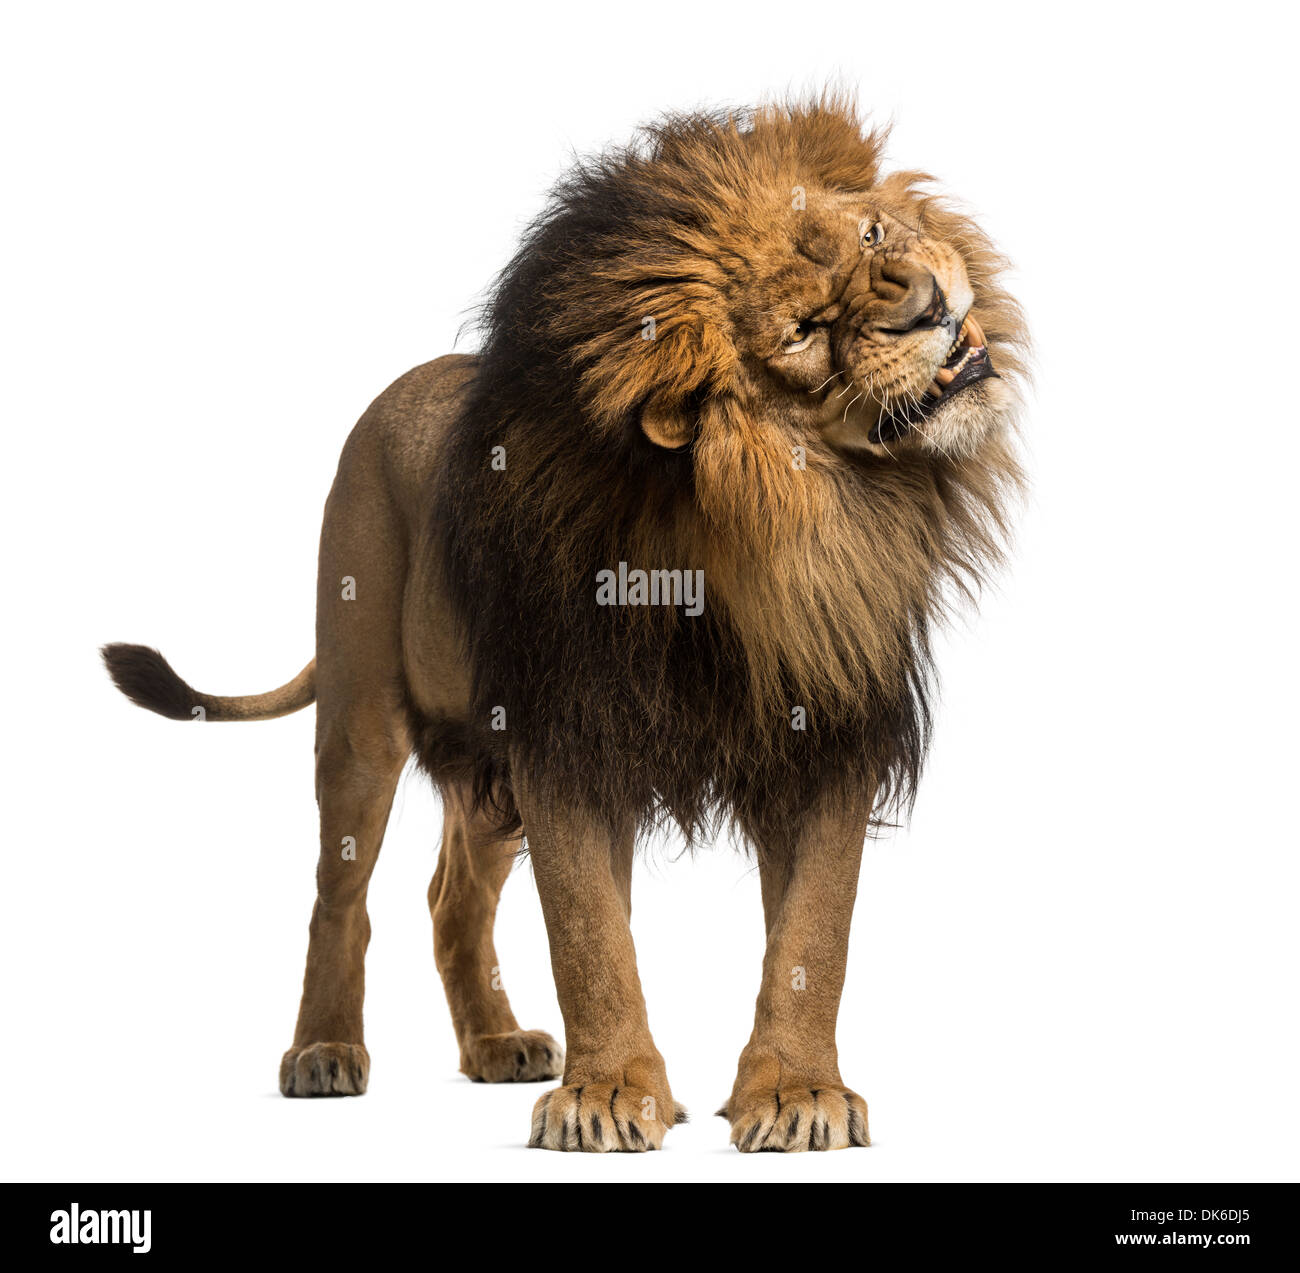 Lion debout, rugissant, Panthera leo, 10 ans, contre fond blanc Banque D'Images